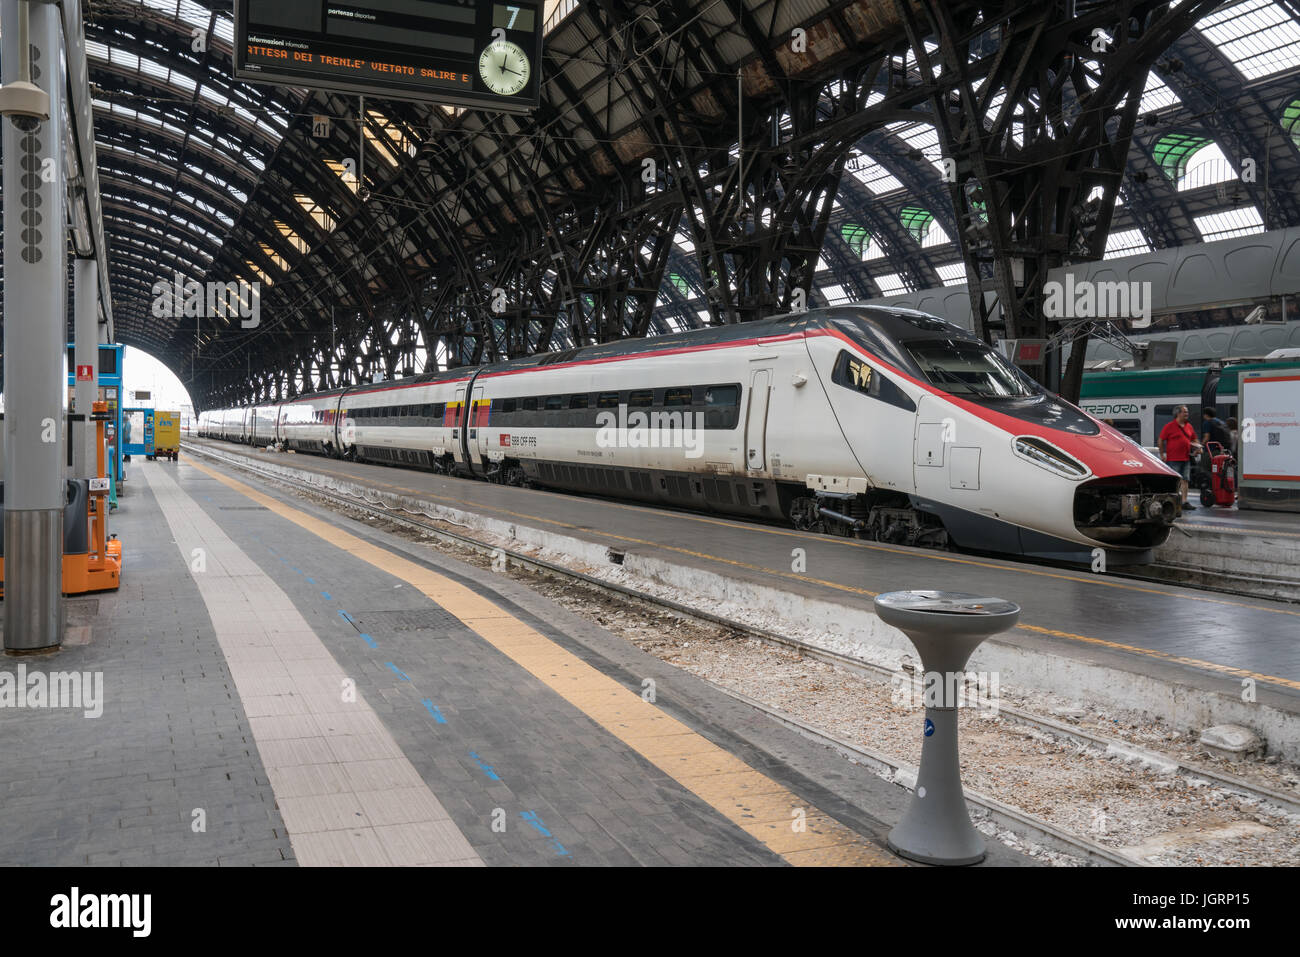 Milano, Italia - 1 luglio: Treno ad alta velocità in attesa di partenza presso la stazione di Milano Centrale in Milano, Italia Foto Stock